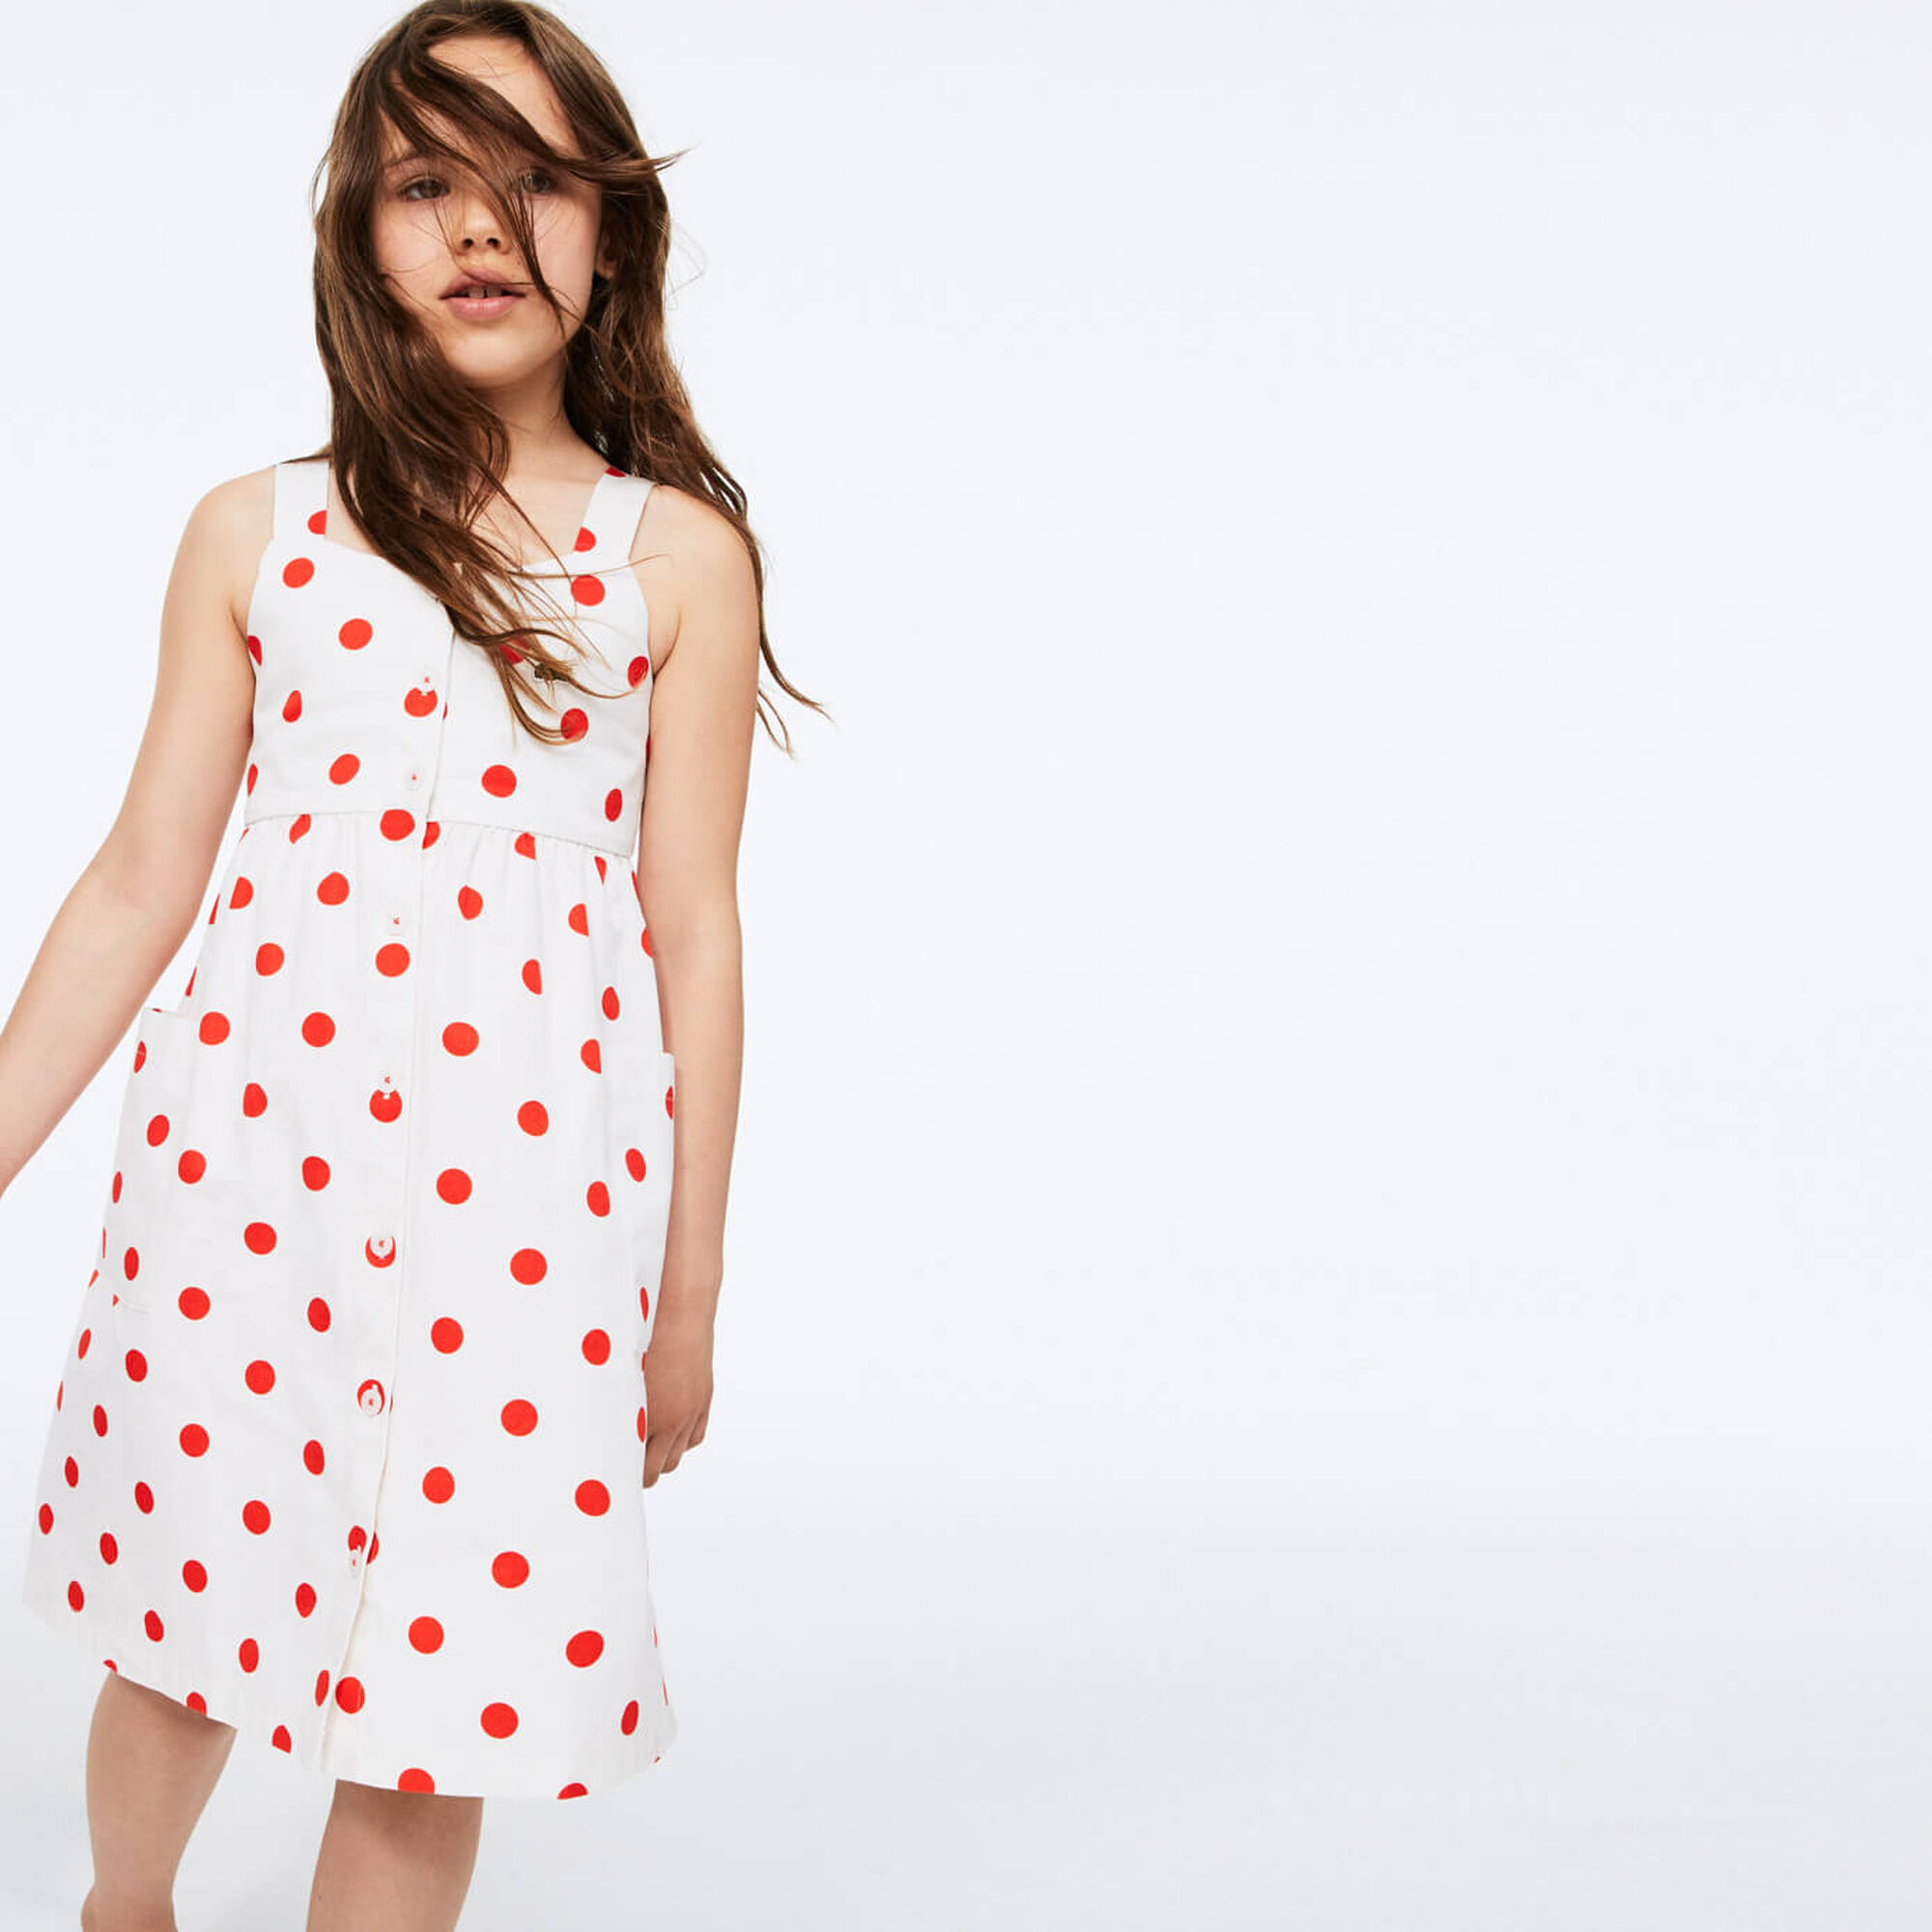 فستان من القطن من مجموعة Polka Dot للفتيات